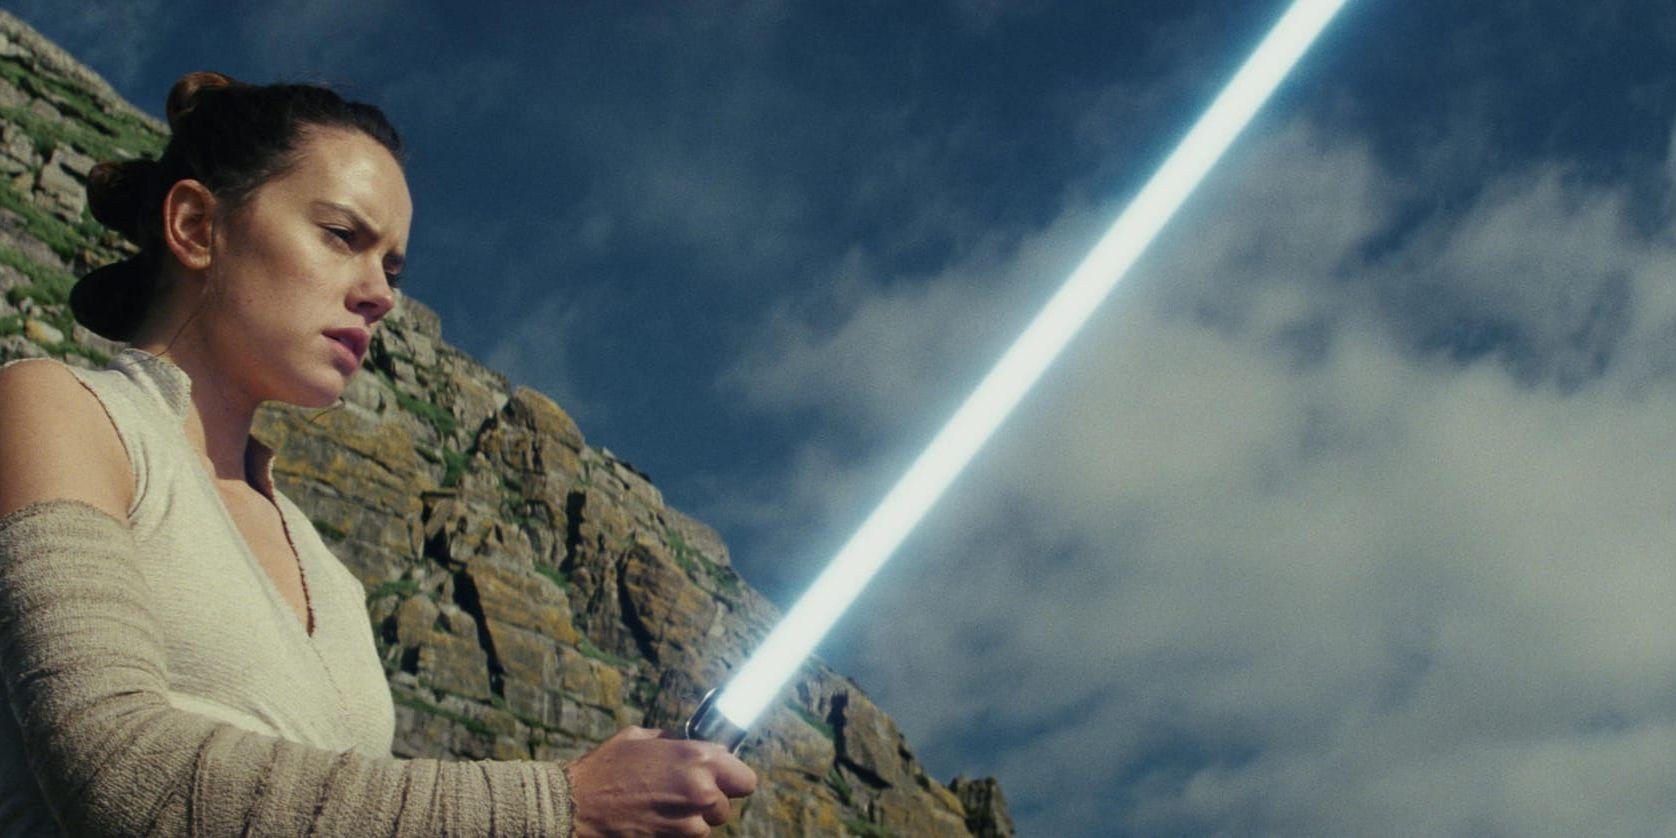 Är Kraften med Rey (Daisy Ridley)? Det får vi se i "Star wars: The last jedi". Pressbild.